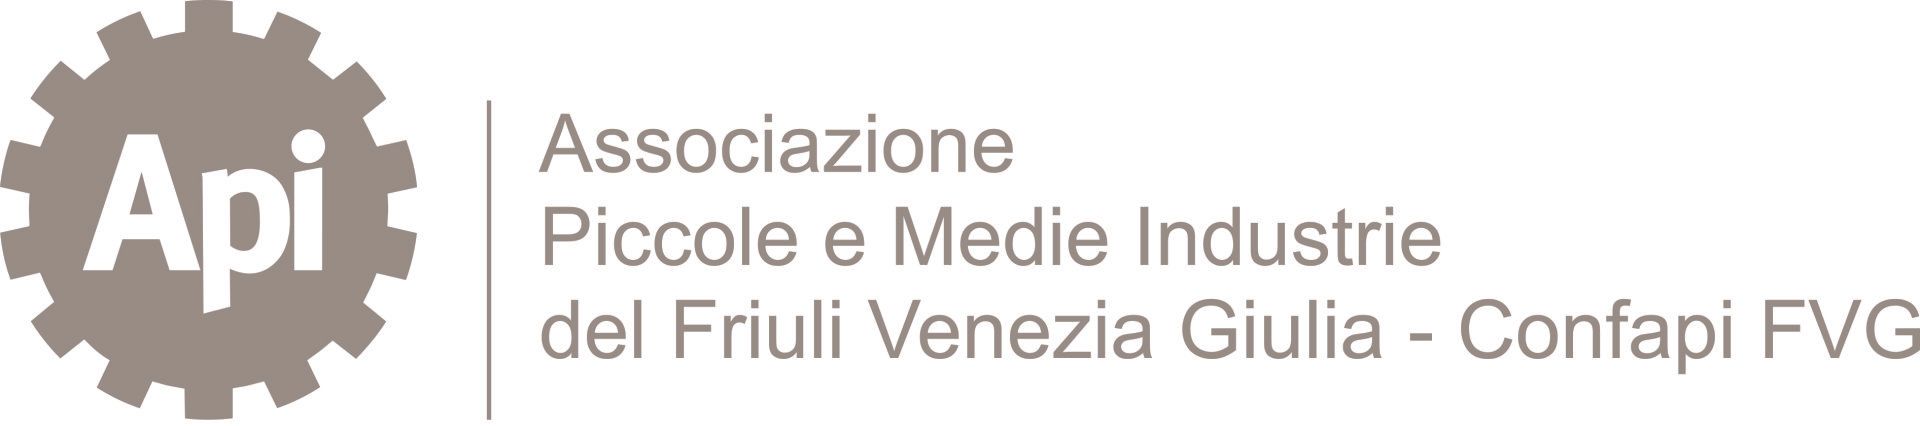 API Friuli Venezia Giulia logo